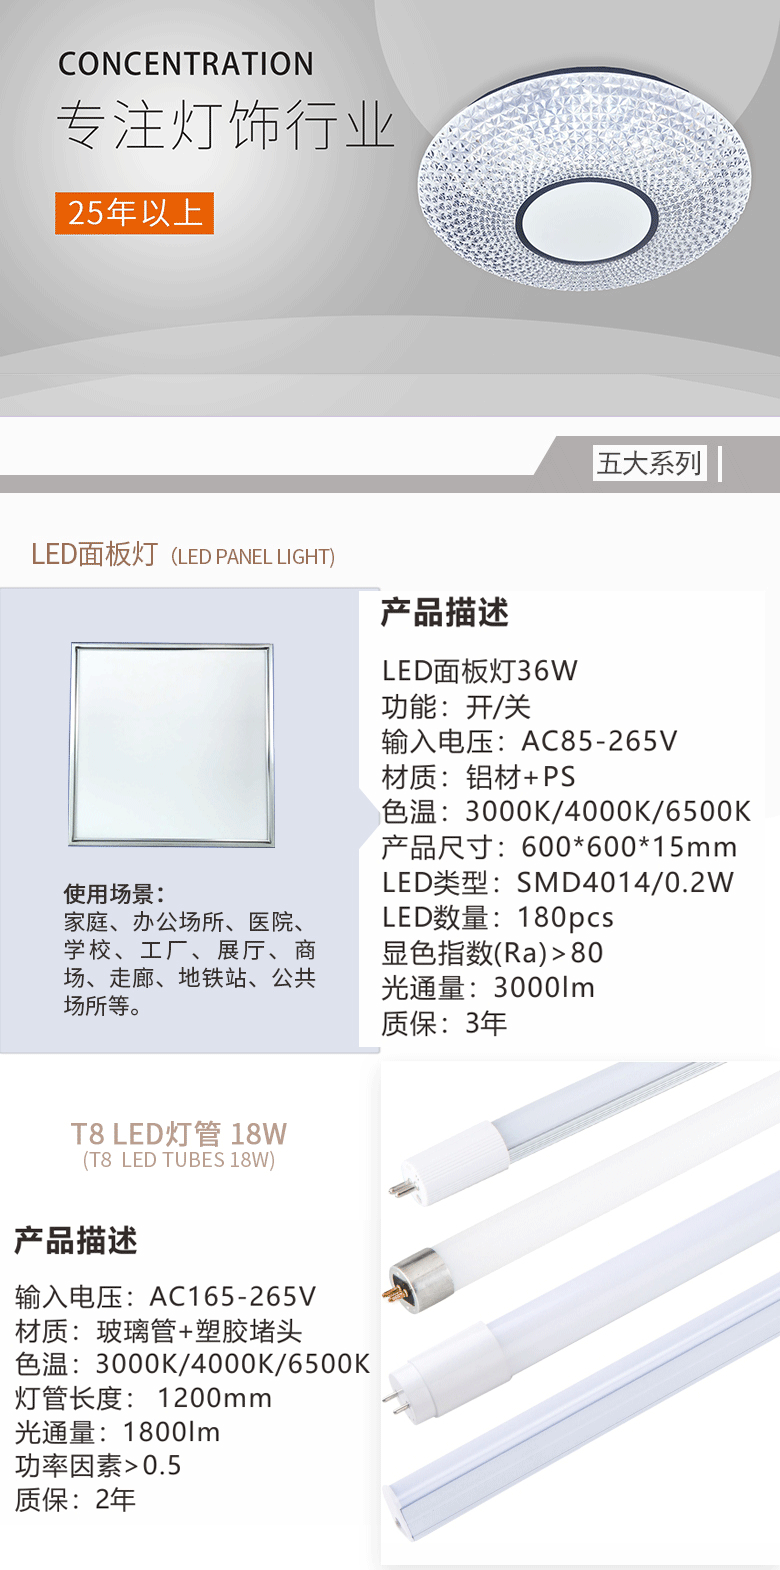 LED射灯产品简介